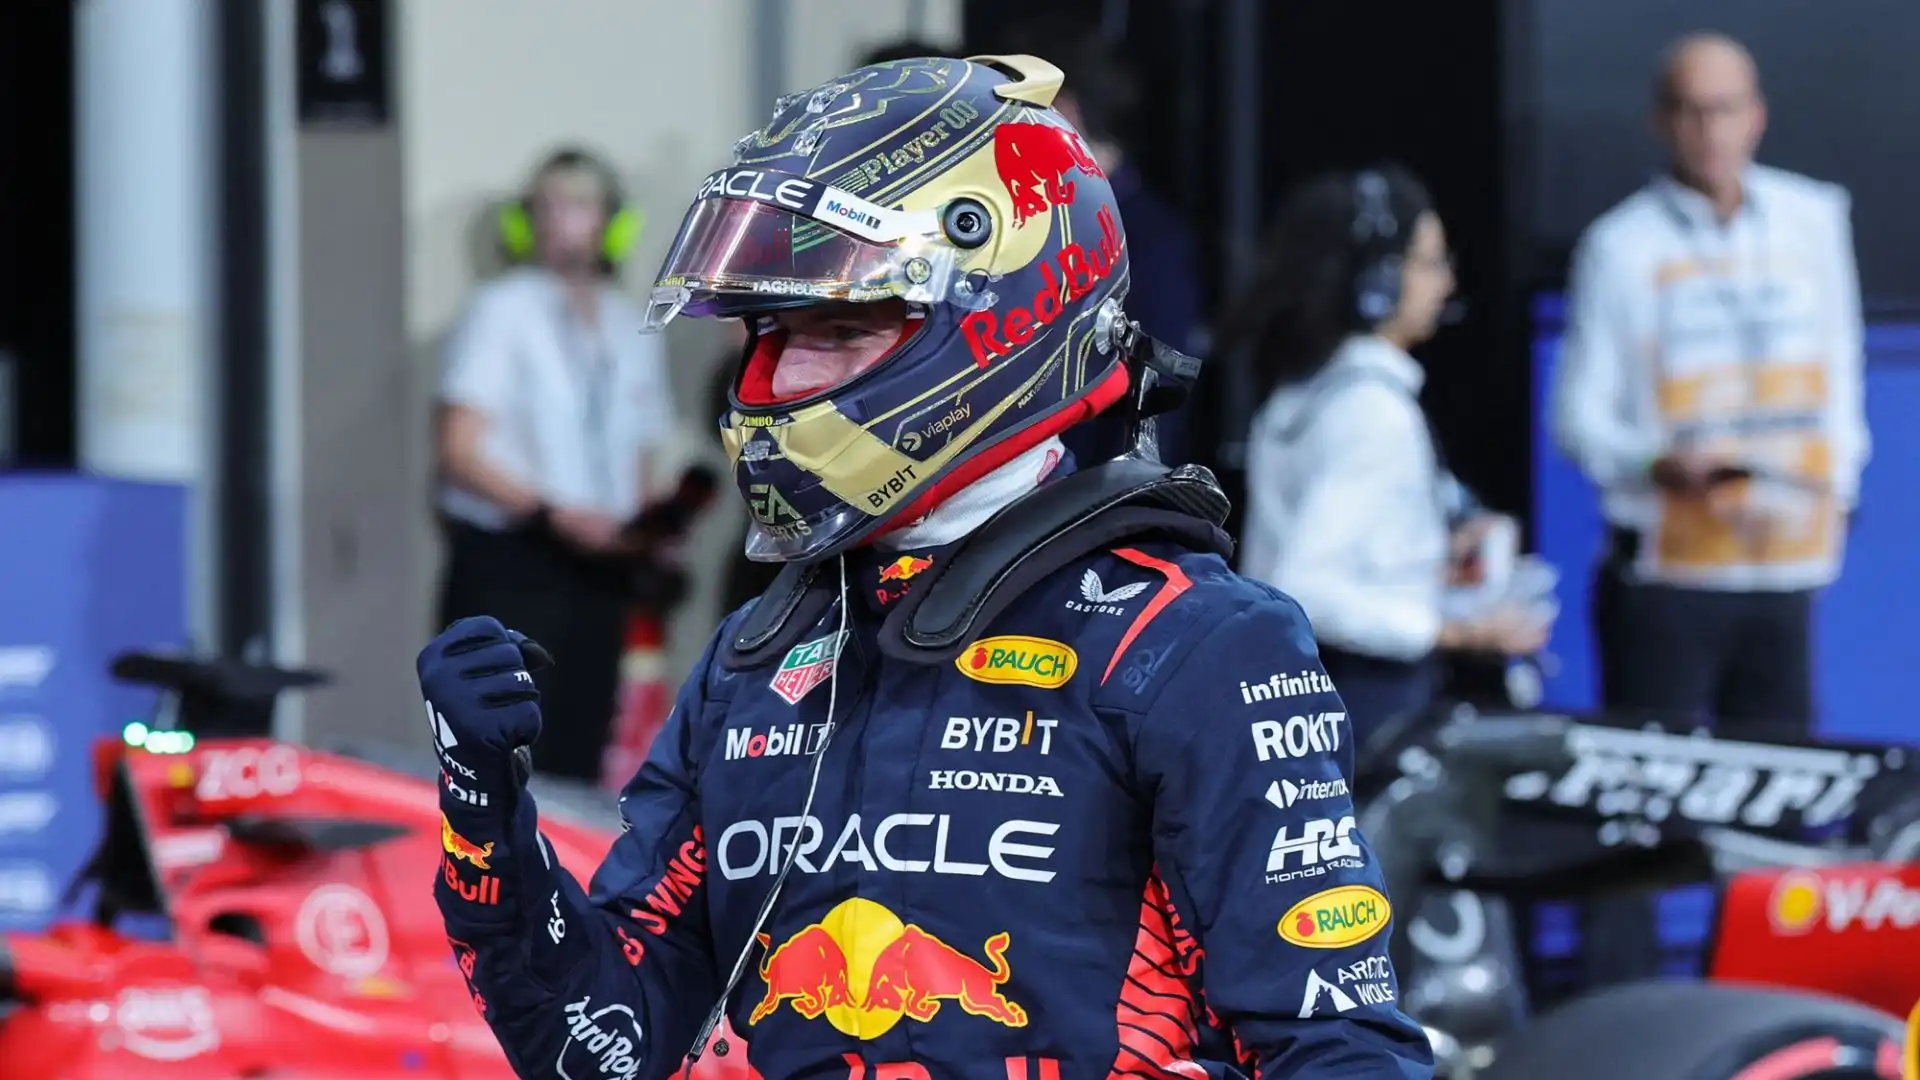 "Bellissimo essere di nuovo in pista, test con Verstappen Racing", ha scritto l'olandese